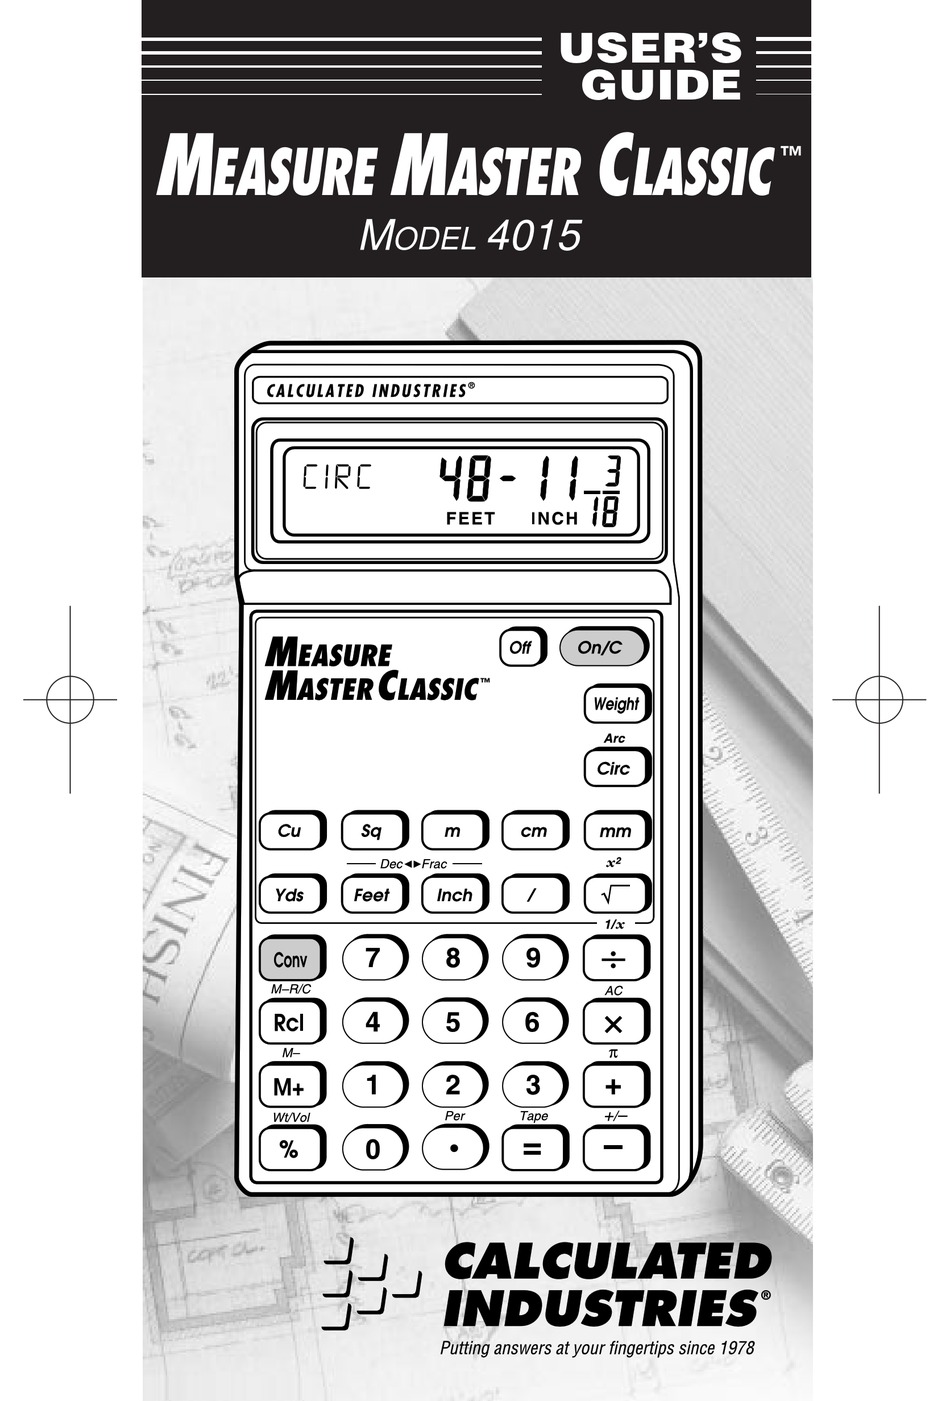 construction master pro desktop model 44080 v3.1 manual